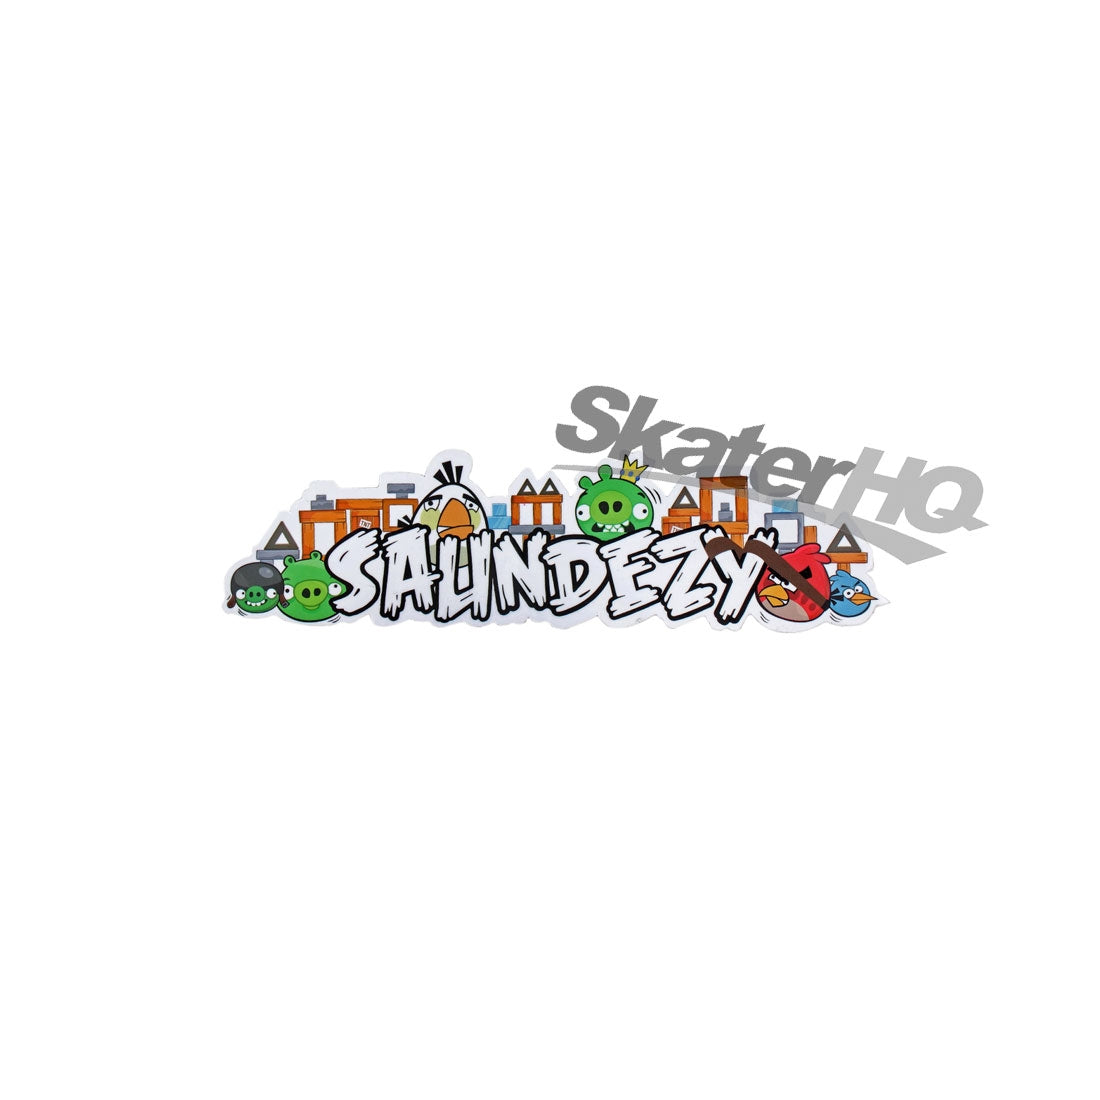 Saundezy Birds Sticker - Small Stickers